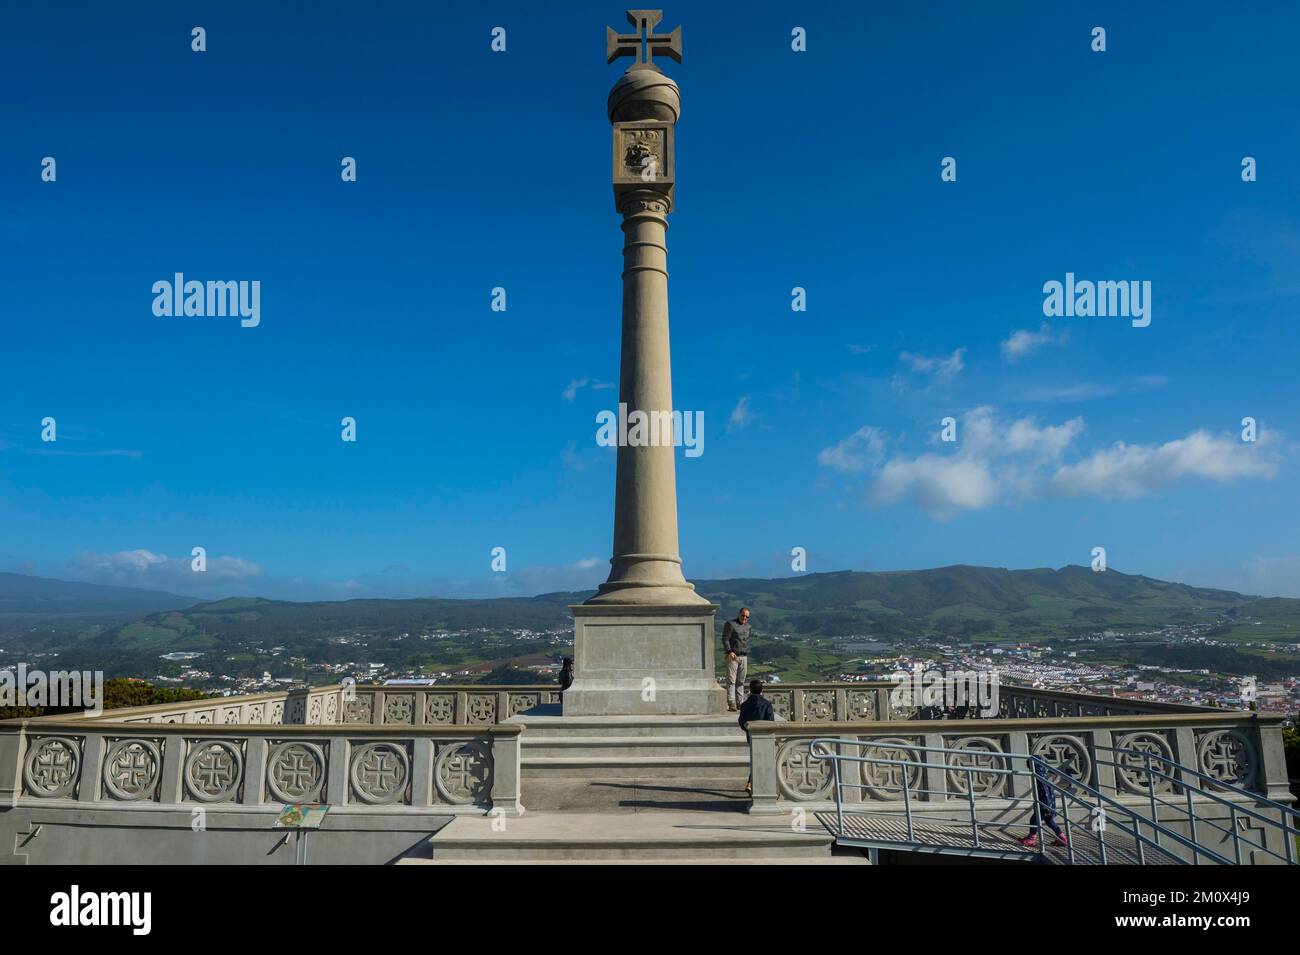 Monument au-dessus de la vue du patrimoine mondial de l'UNESCO, Angra do Heroísmo, île de Terceira, Açores, Portugal, Europe Banque D'Images